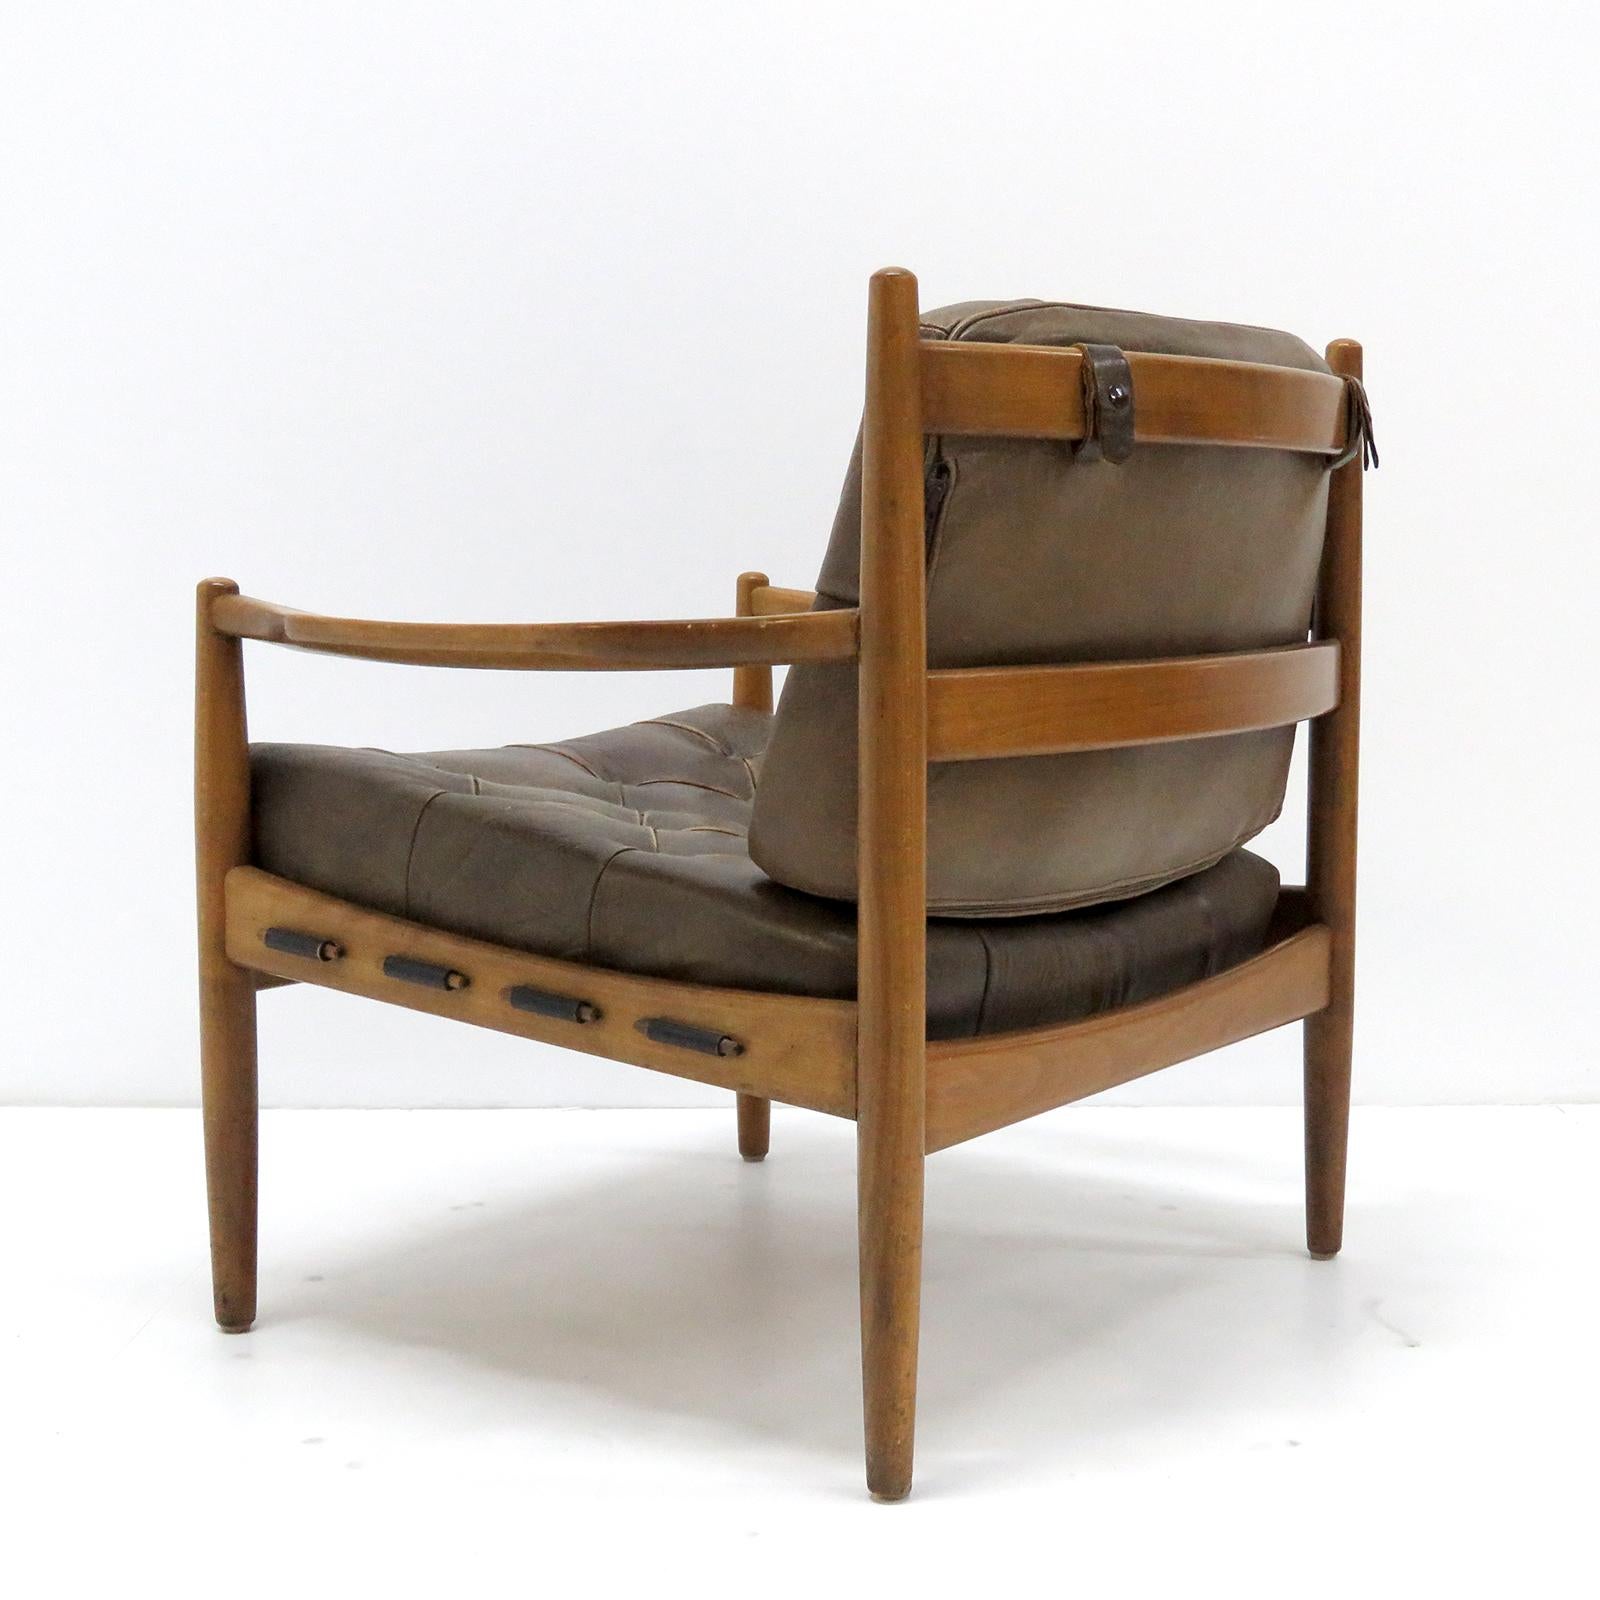 Stained Ingemar Thillmark 'Läckö' Chair, 1950